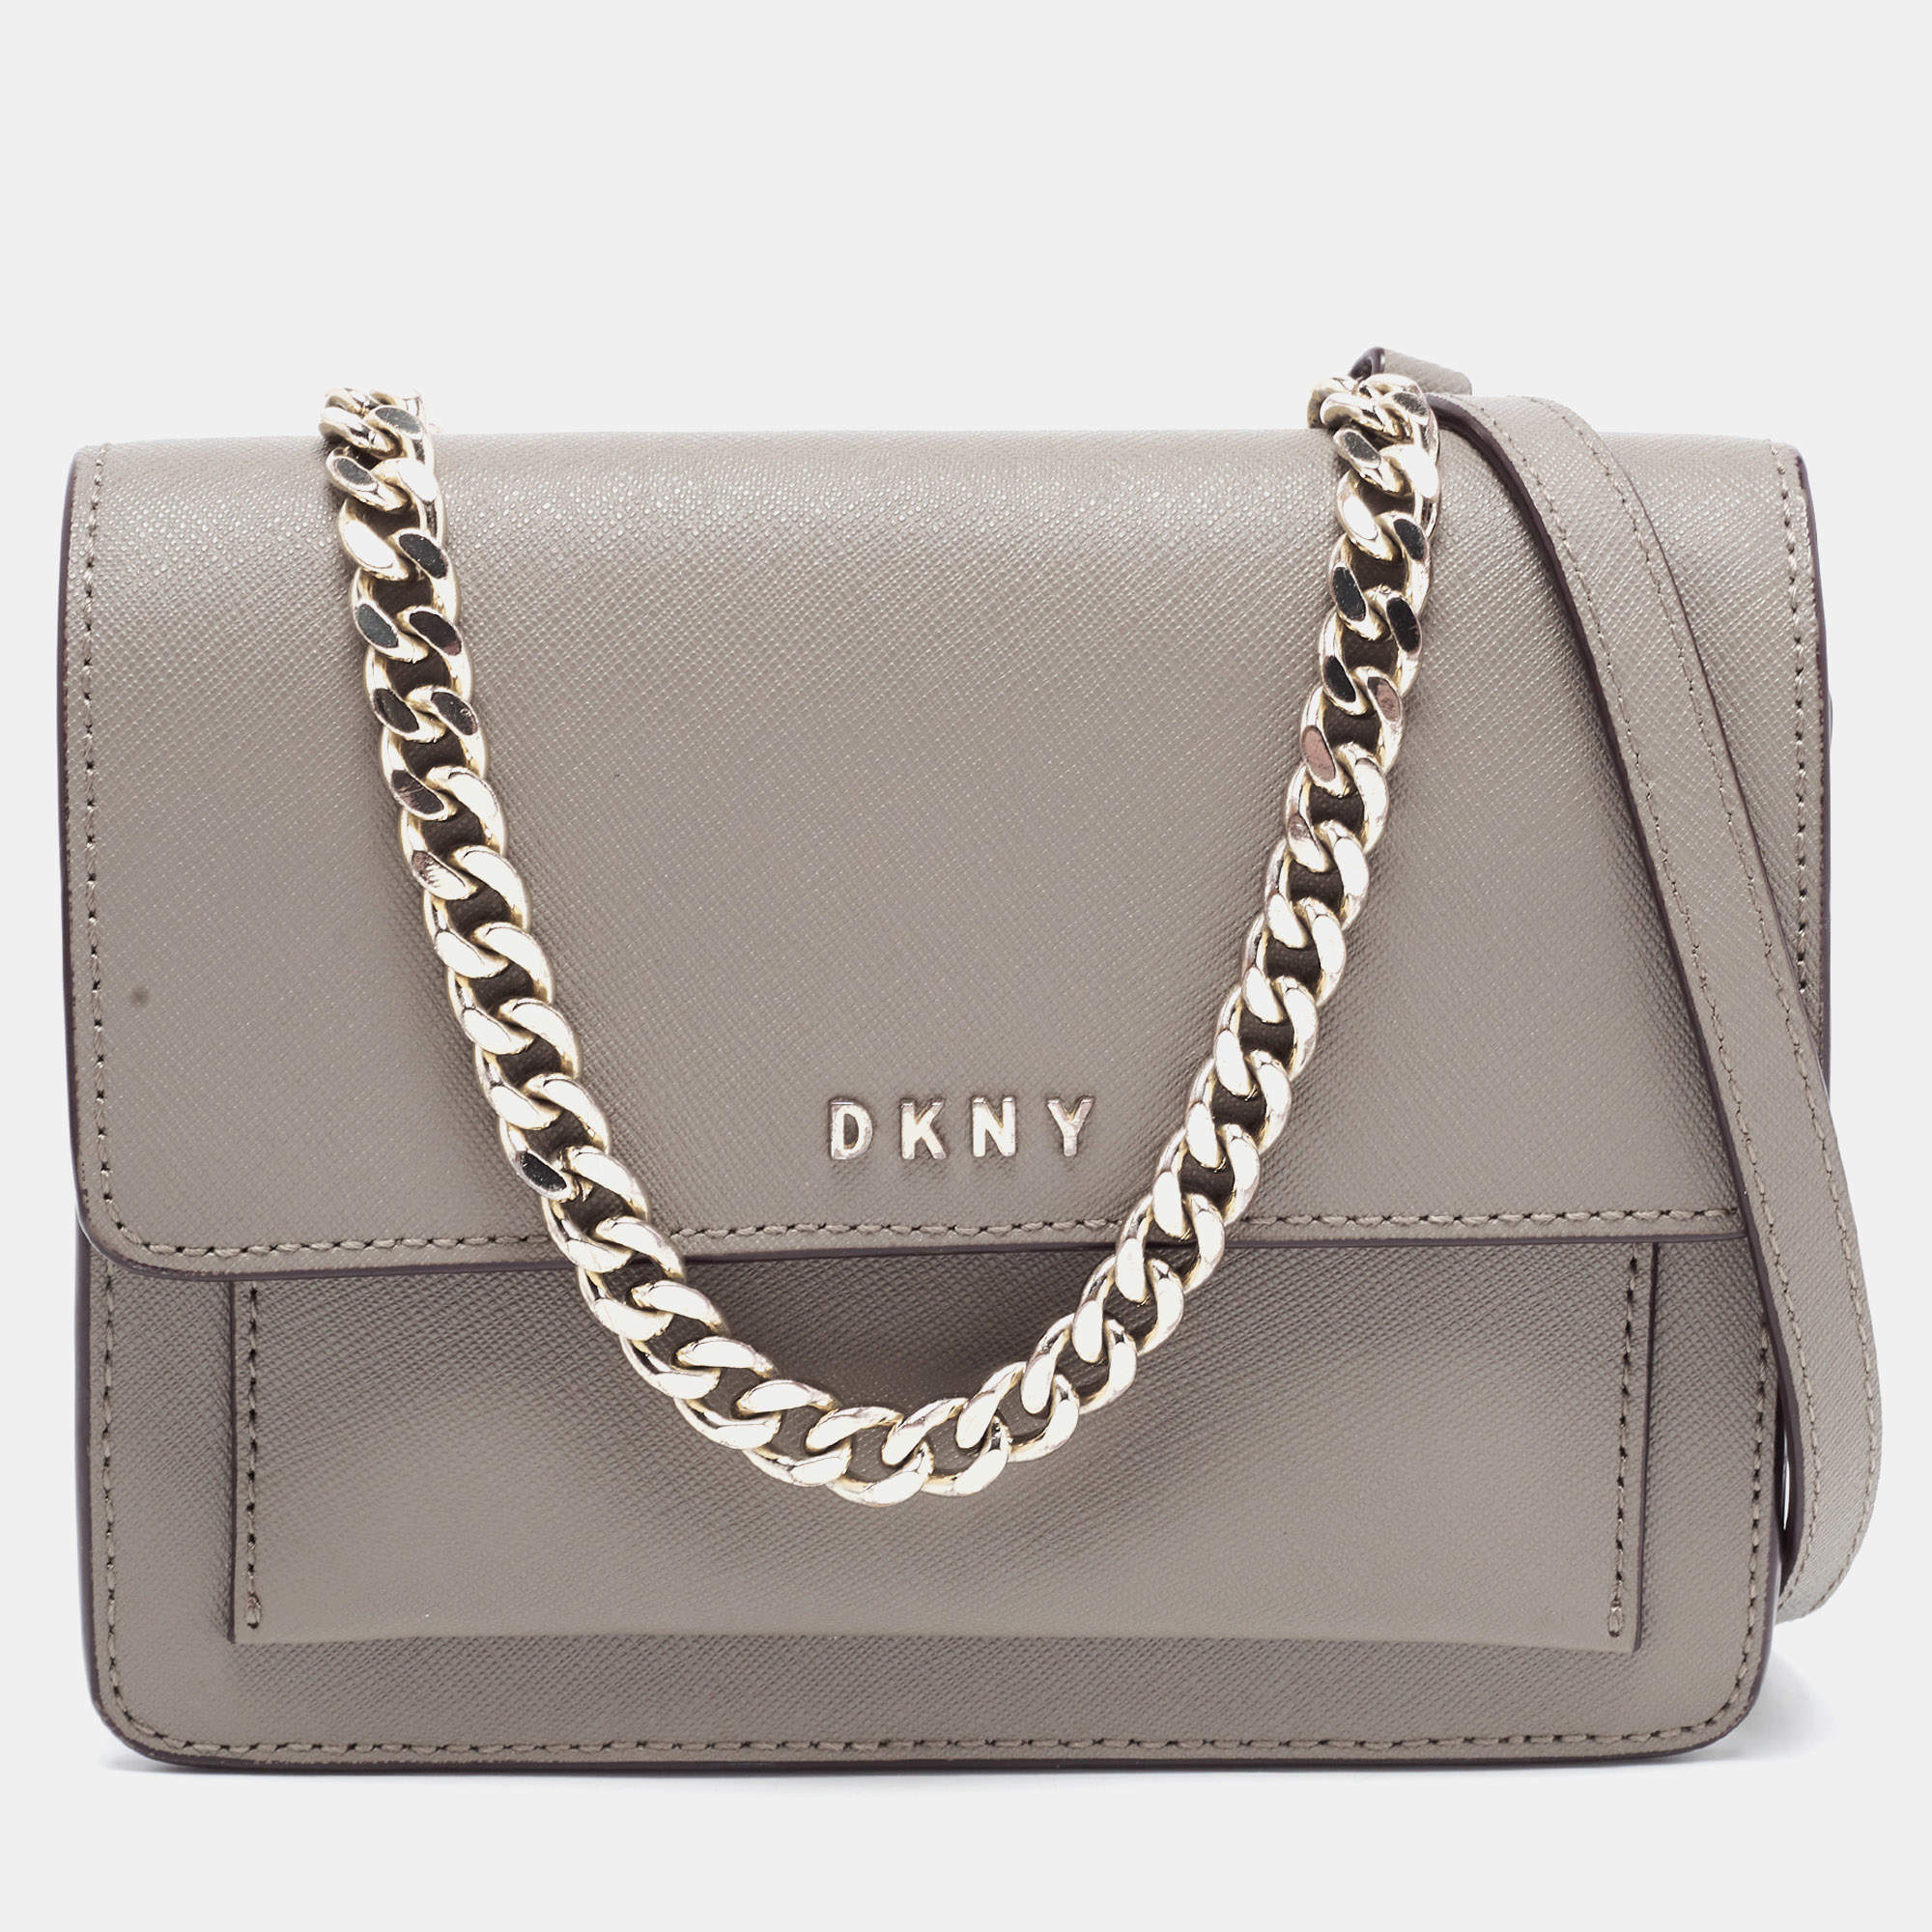 DKNY Beige Leather Flap Shoulder Bag